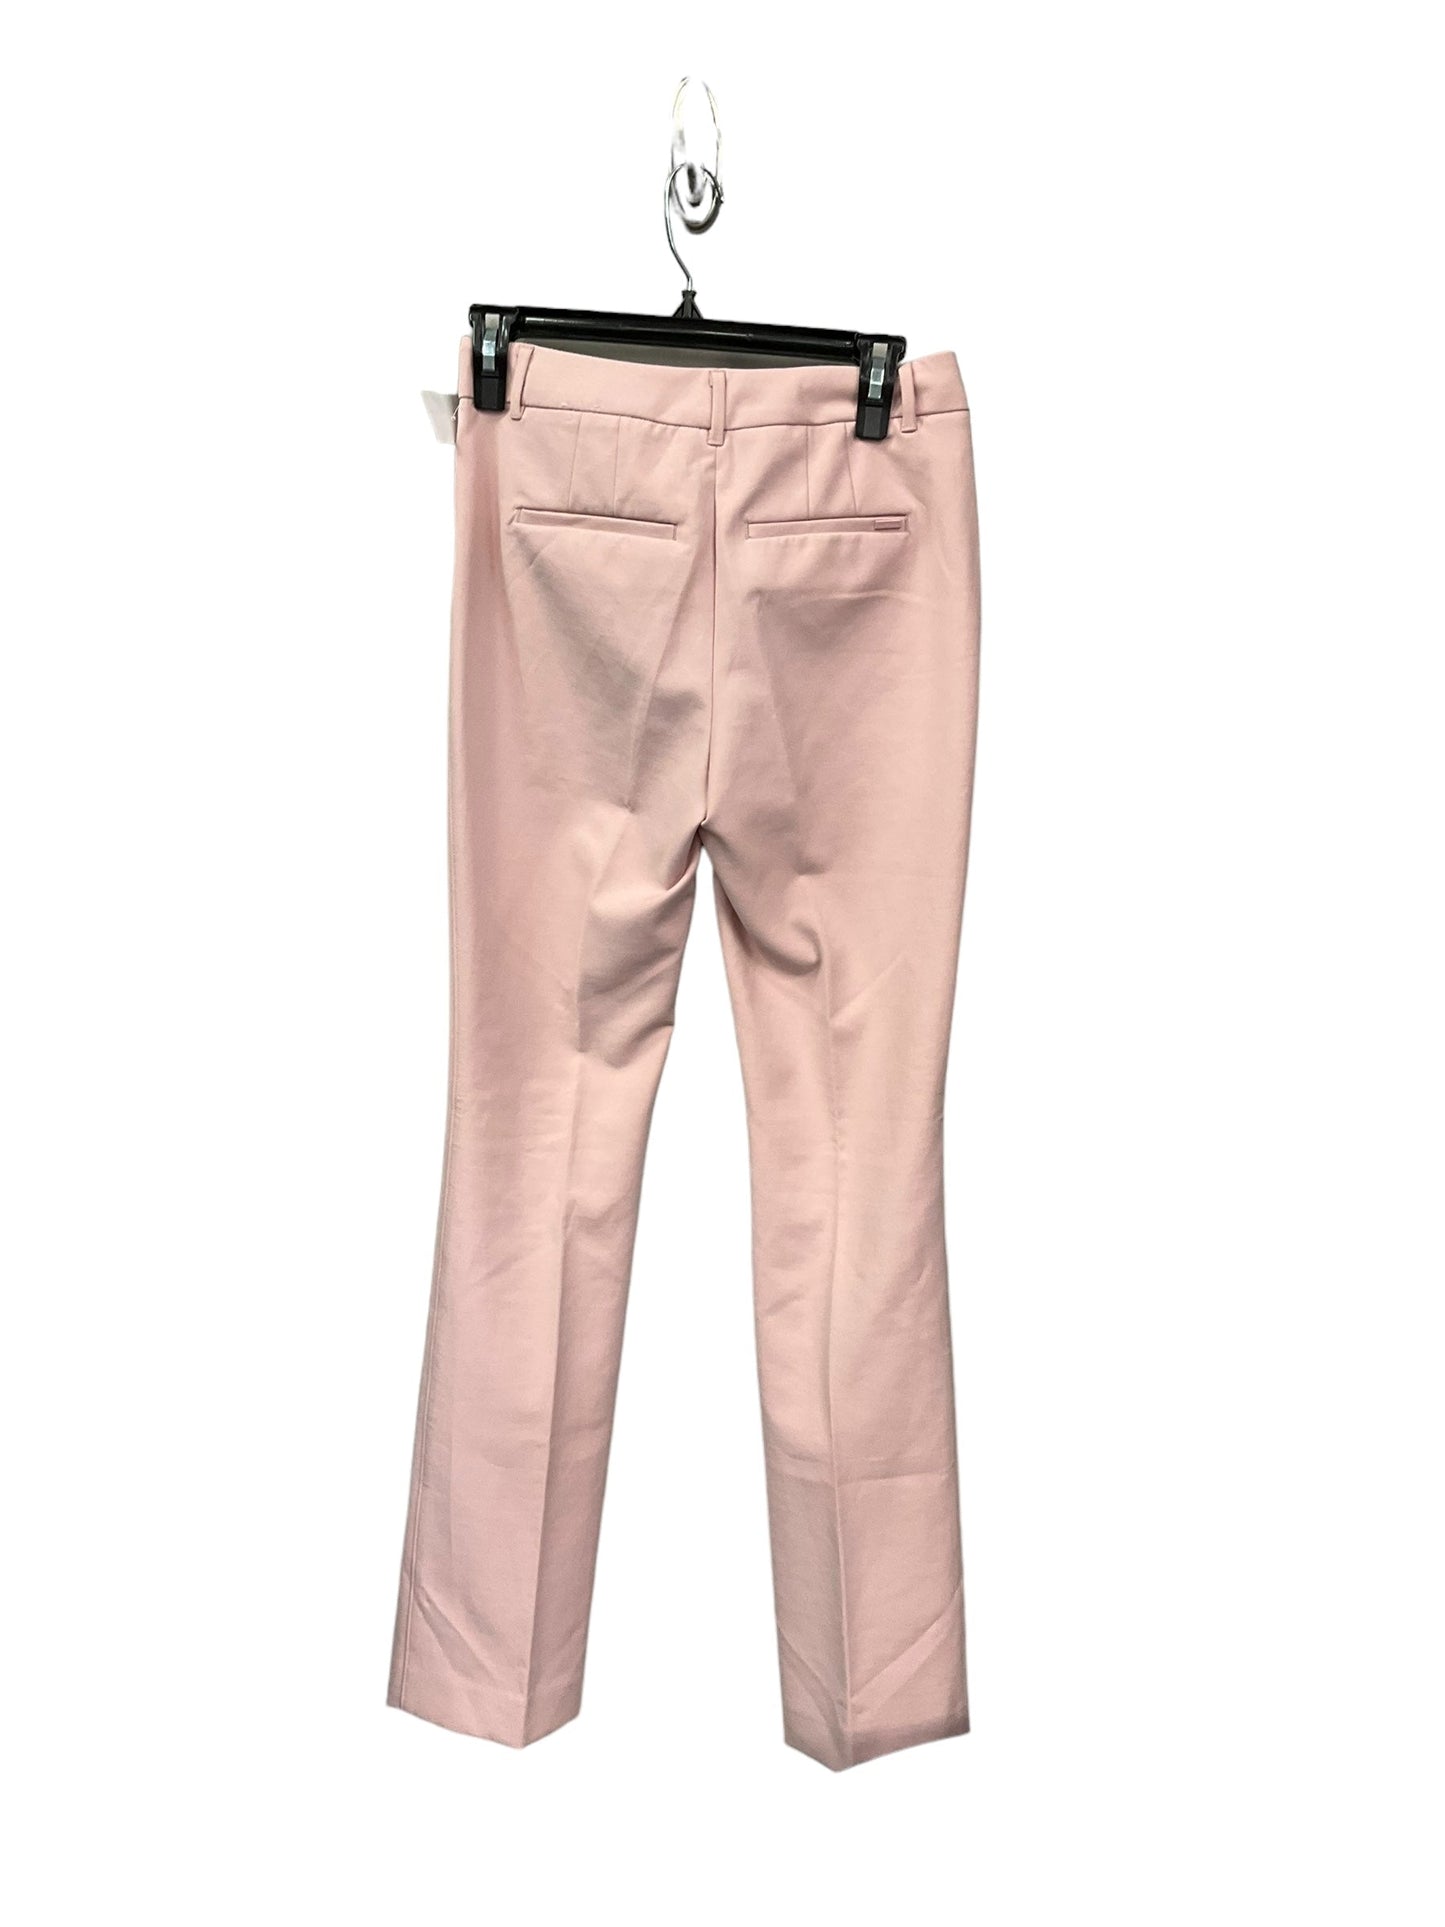 Pink Pants Dress White House Black Market, Size 0